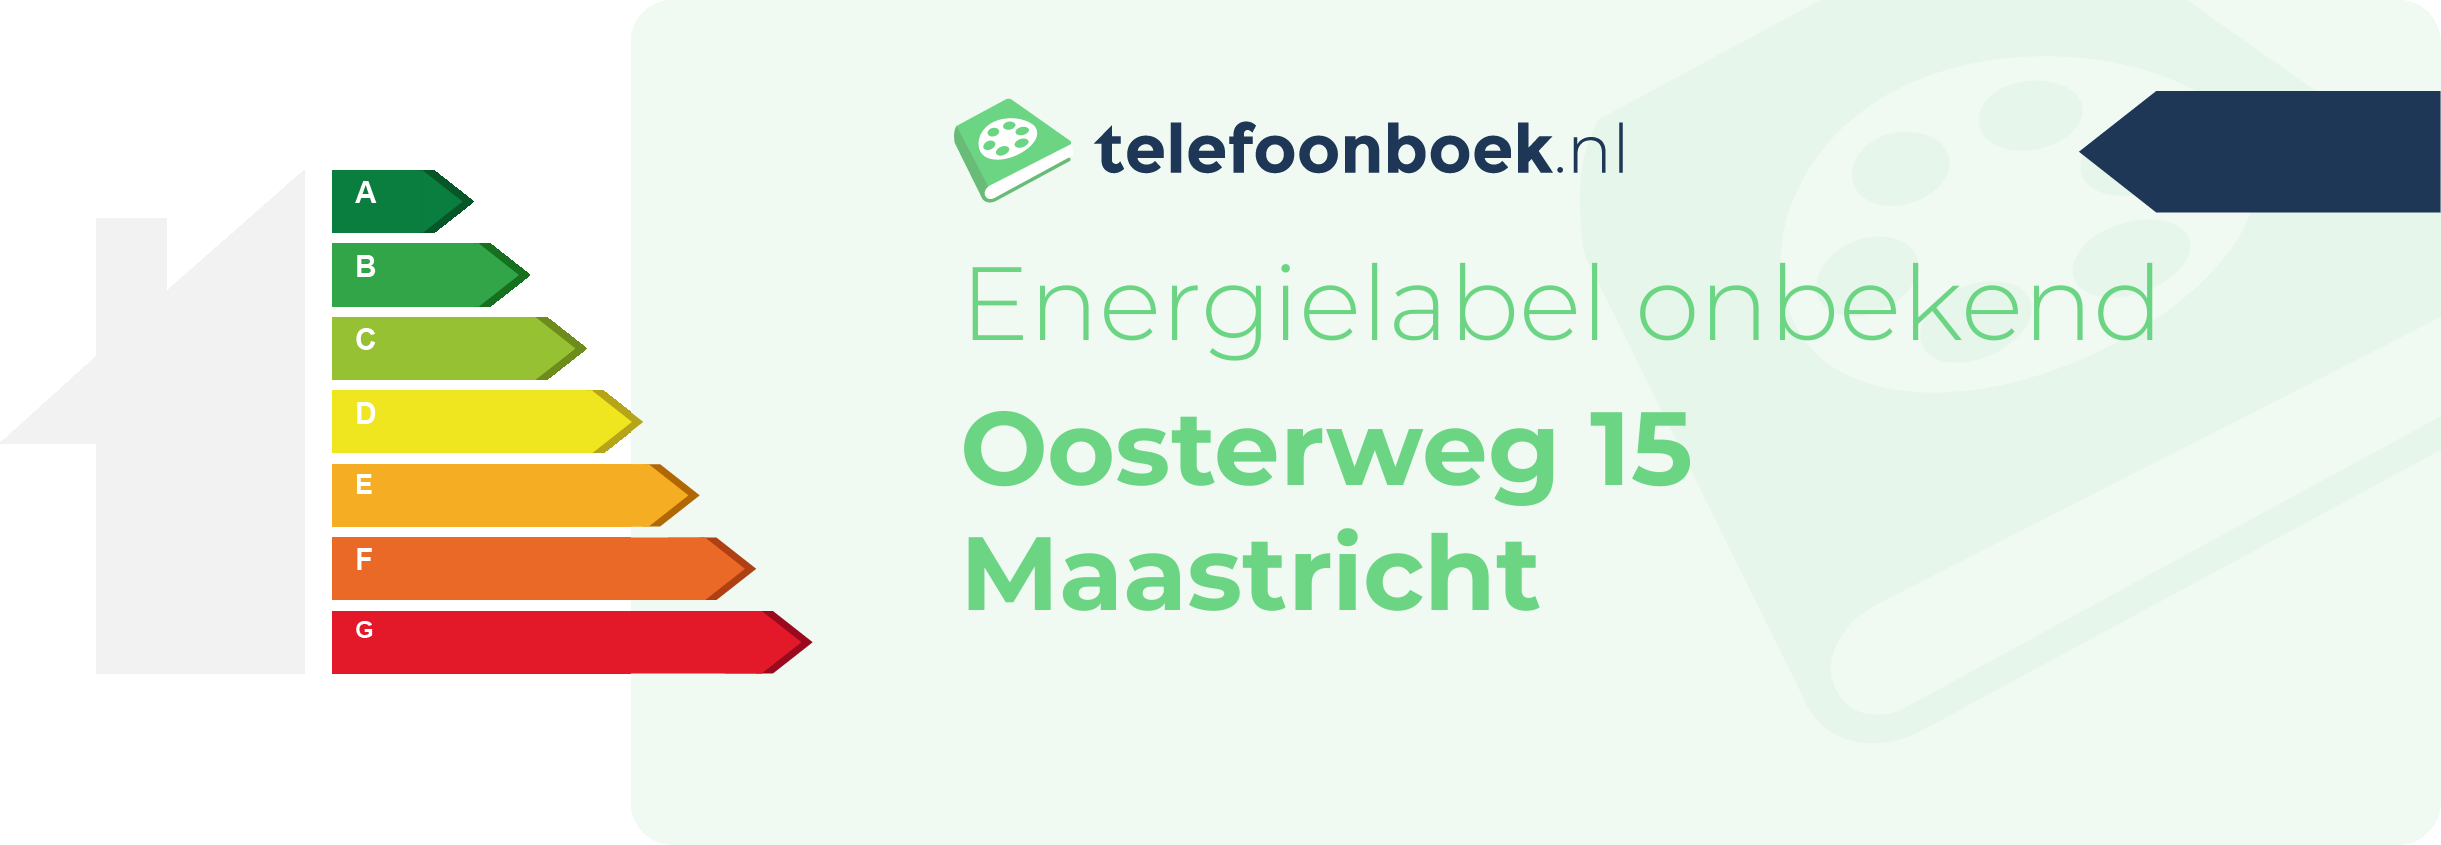 Energielabel Oosterweg 15 Maastricht